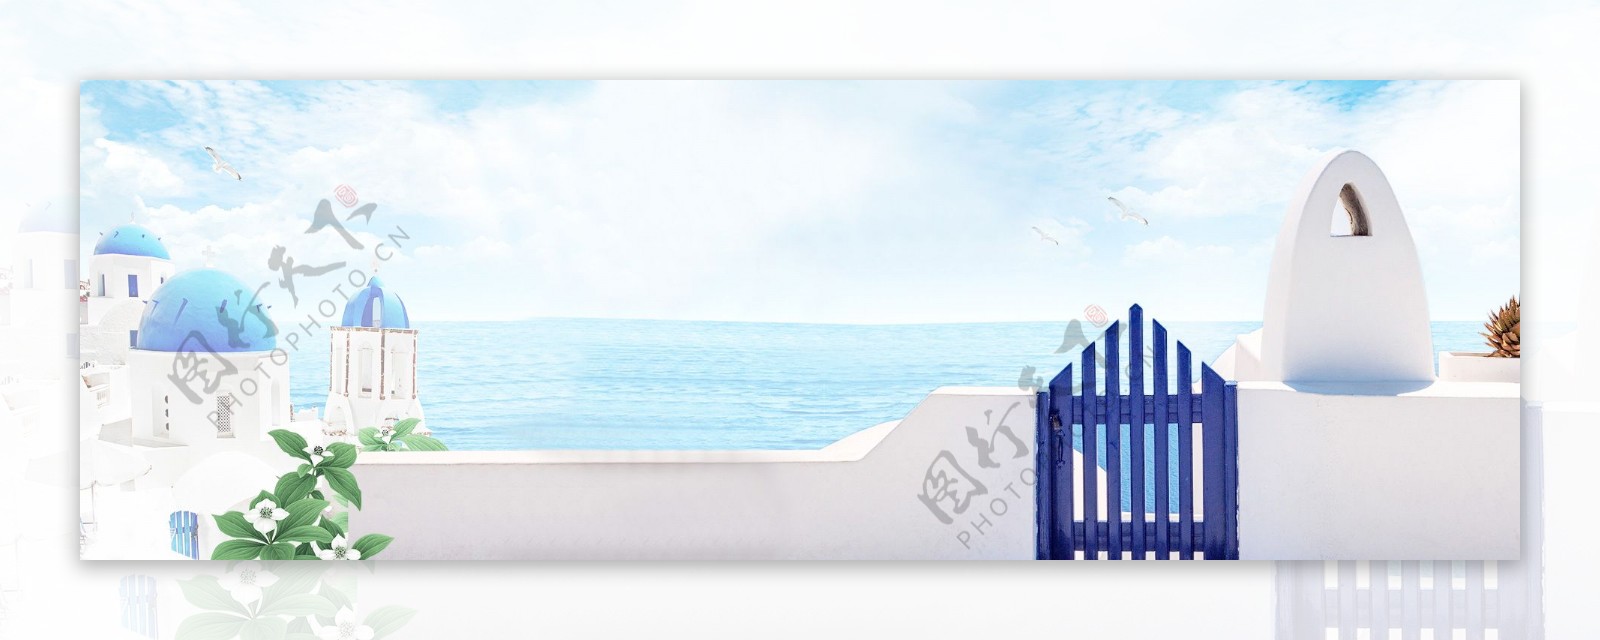 蓝色大海城堡banner背景素材